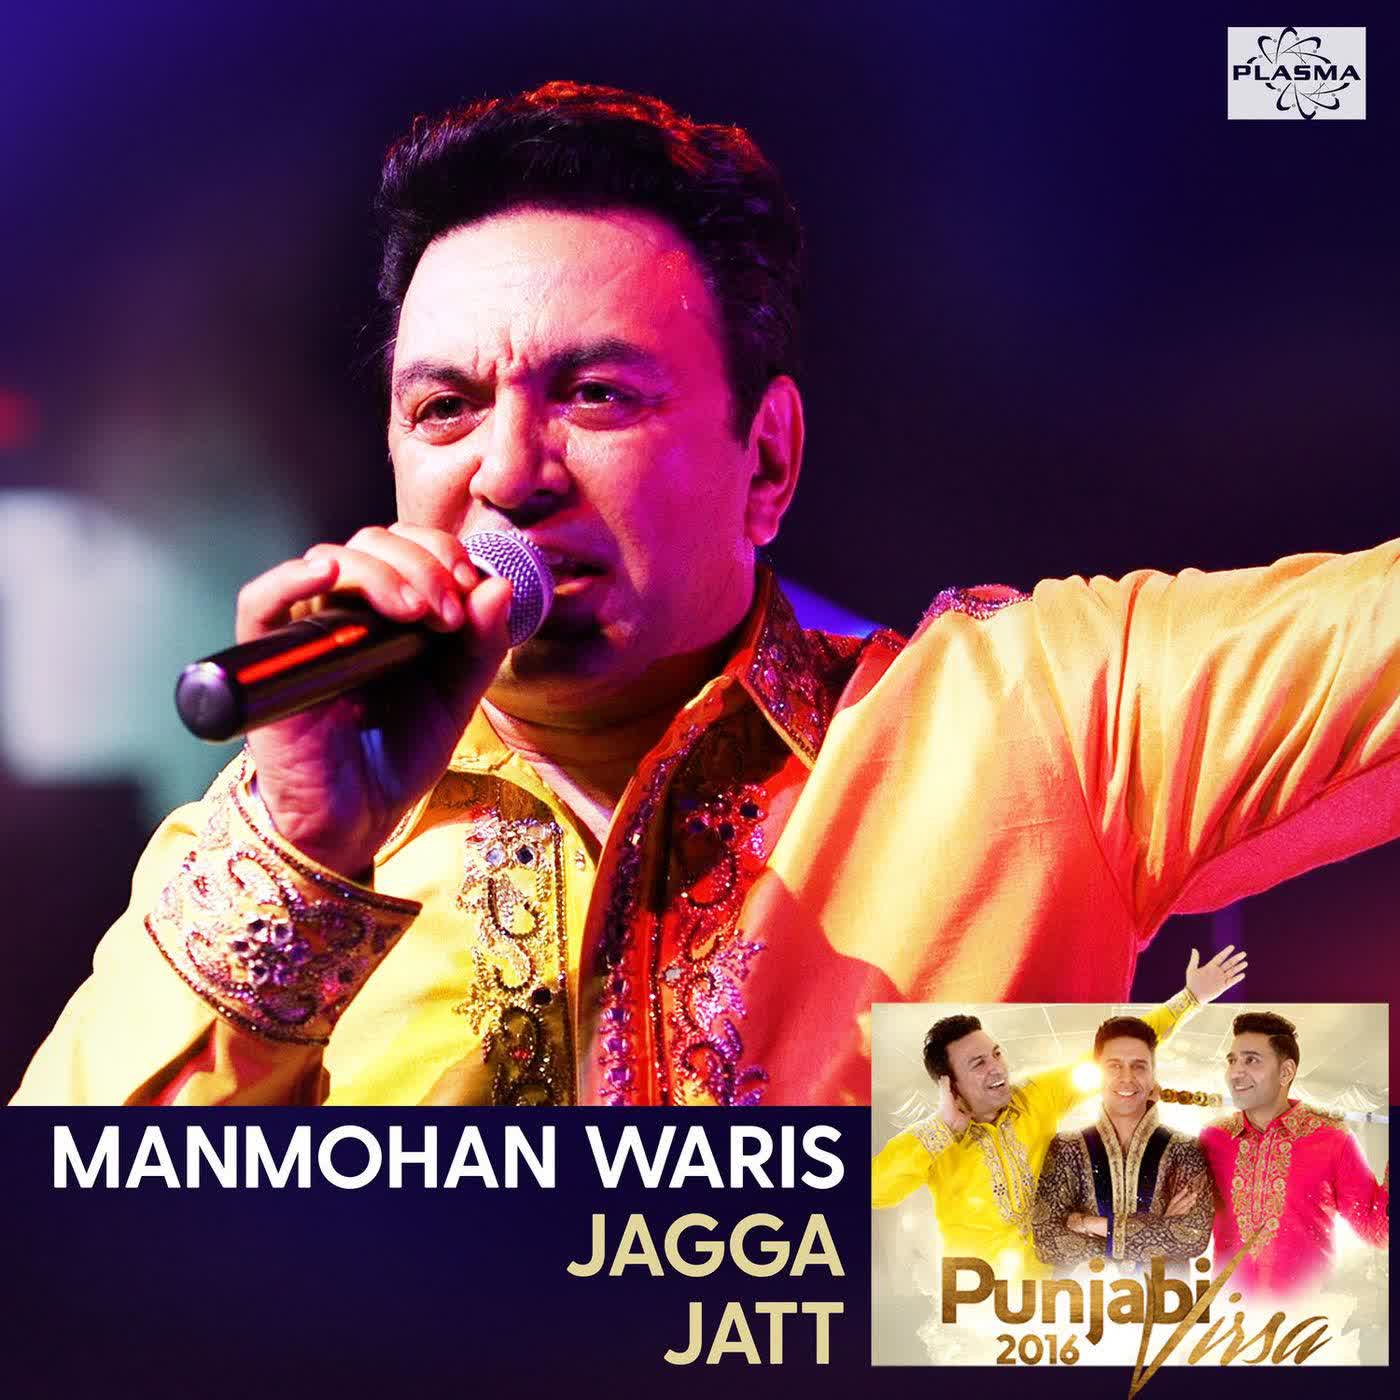 Jagga Jatt (Punjabi Virsa 2016) Manmohan Waris mp3 song